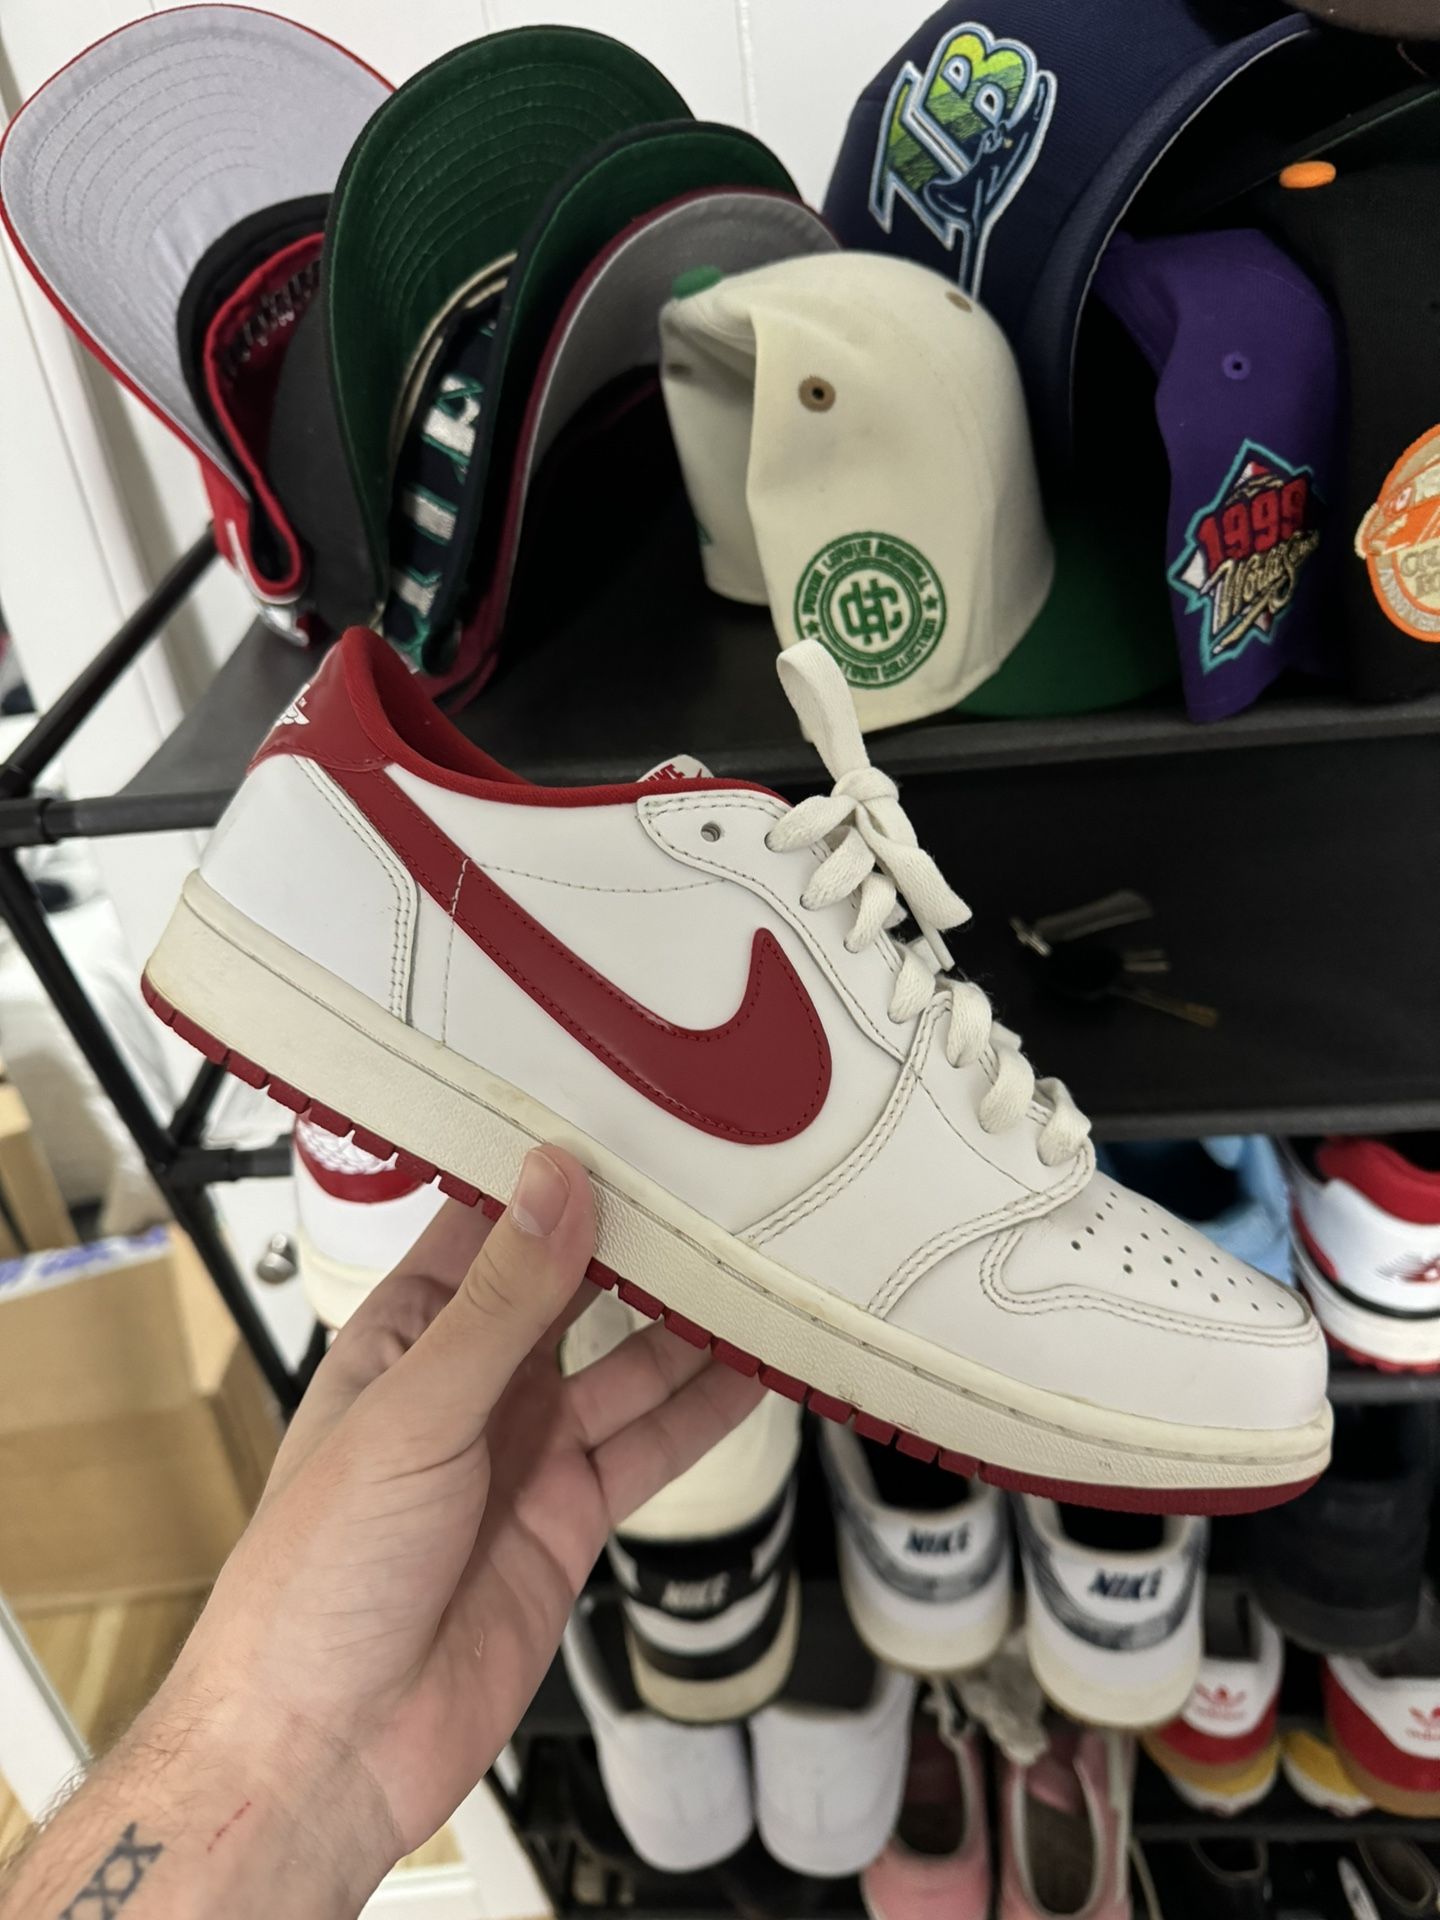 Jordan’s, Dunks, Nike for sale/trade